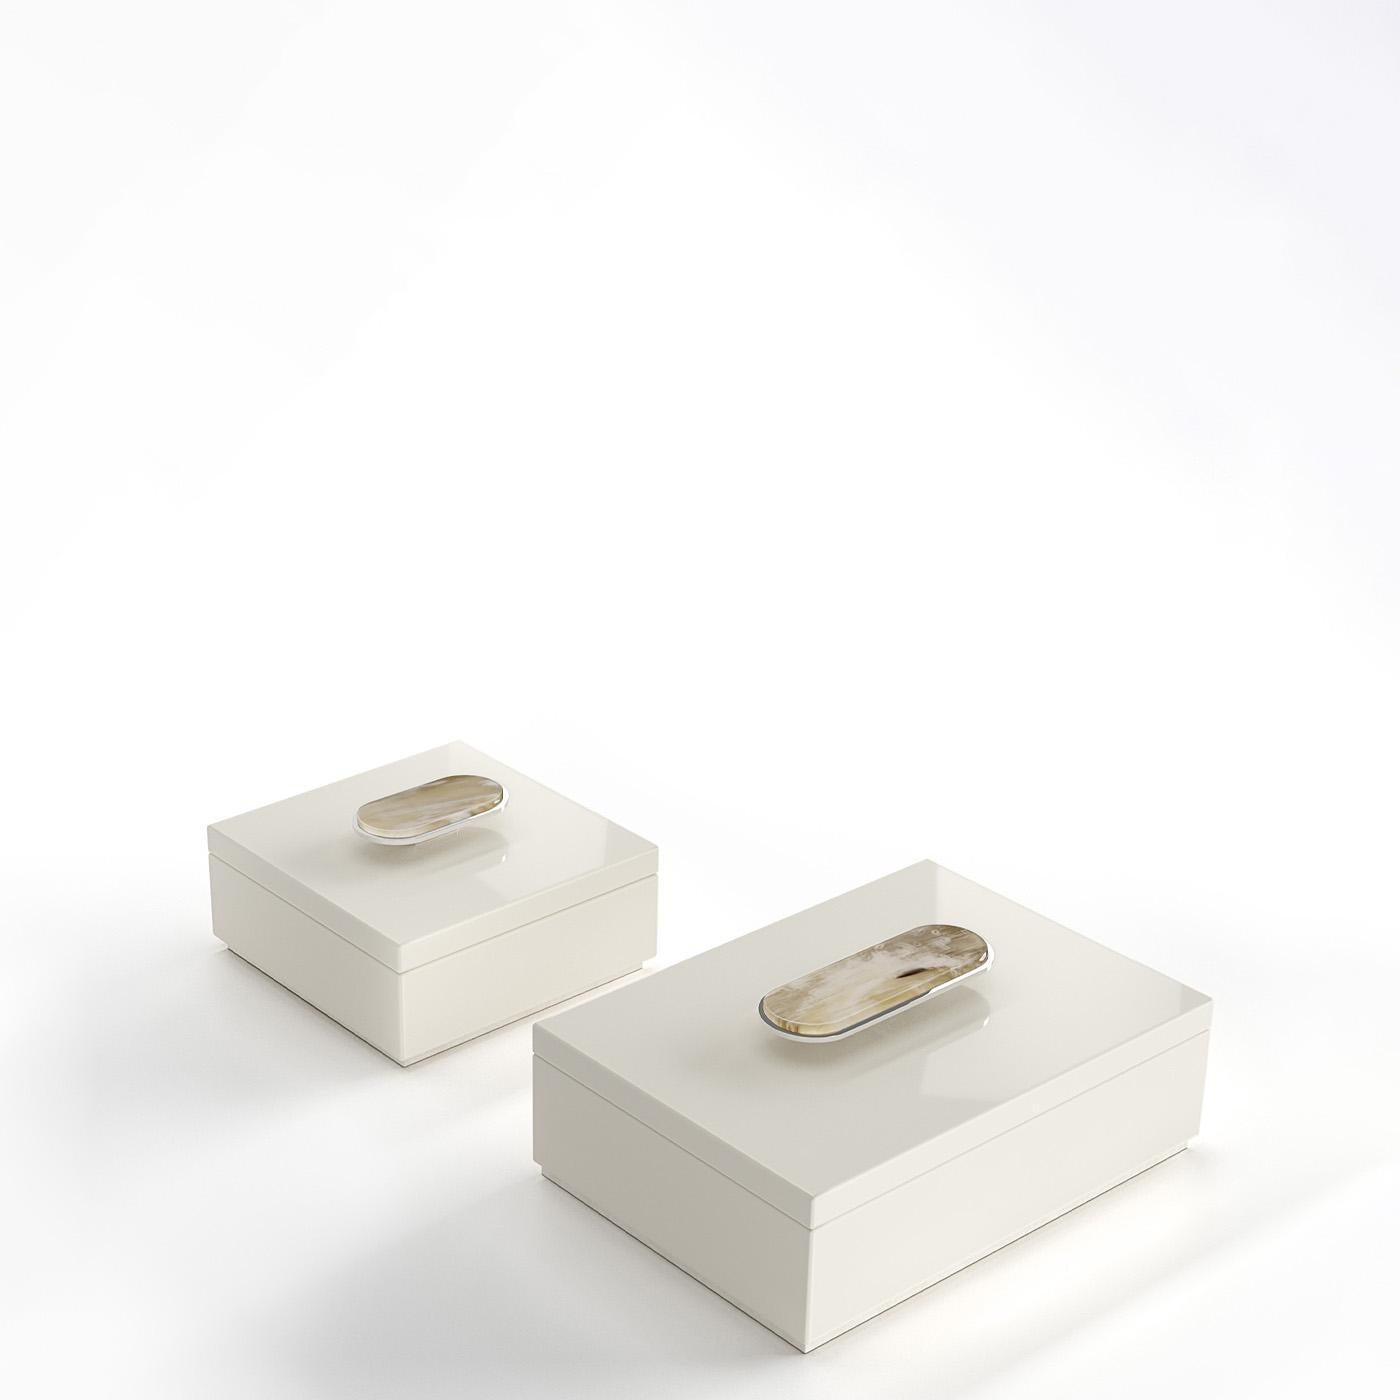 La boîte Priora est un accessoire polyvalent et élégant, conçu pour ranger avec le plus grand soin les objets qui vous sont chers. Réalisée en bois laqué ivoire brillant, la boîte se distingue par les détails en Corno Italiano et en laiton chromé